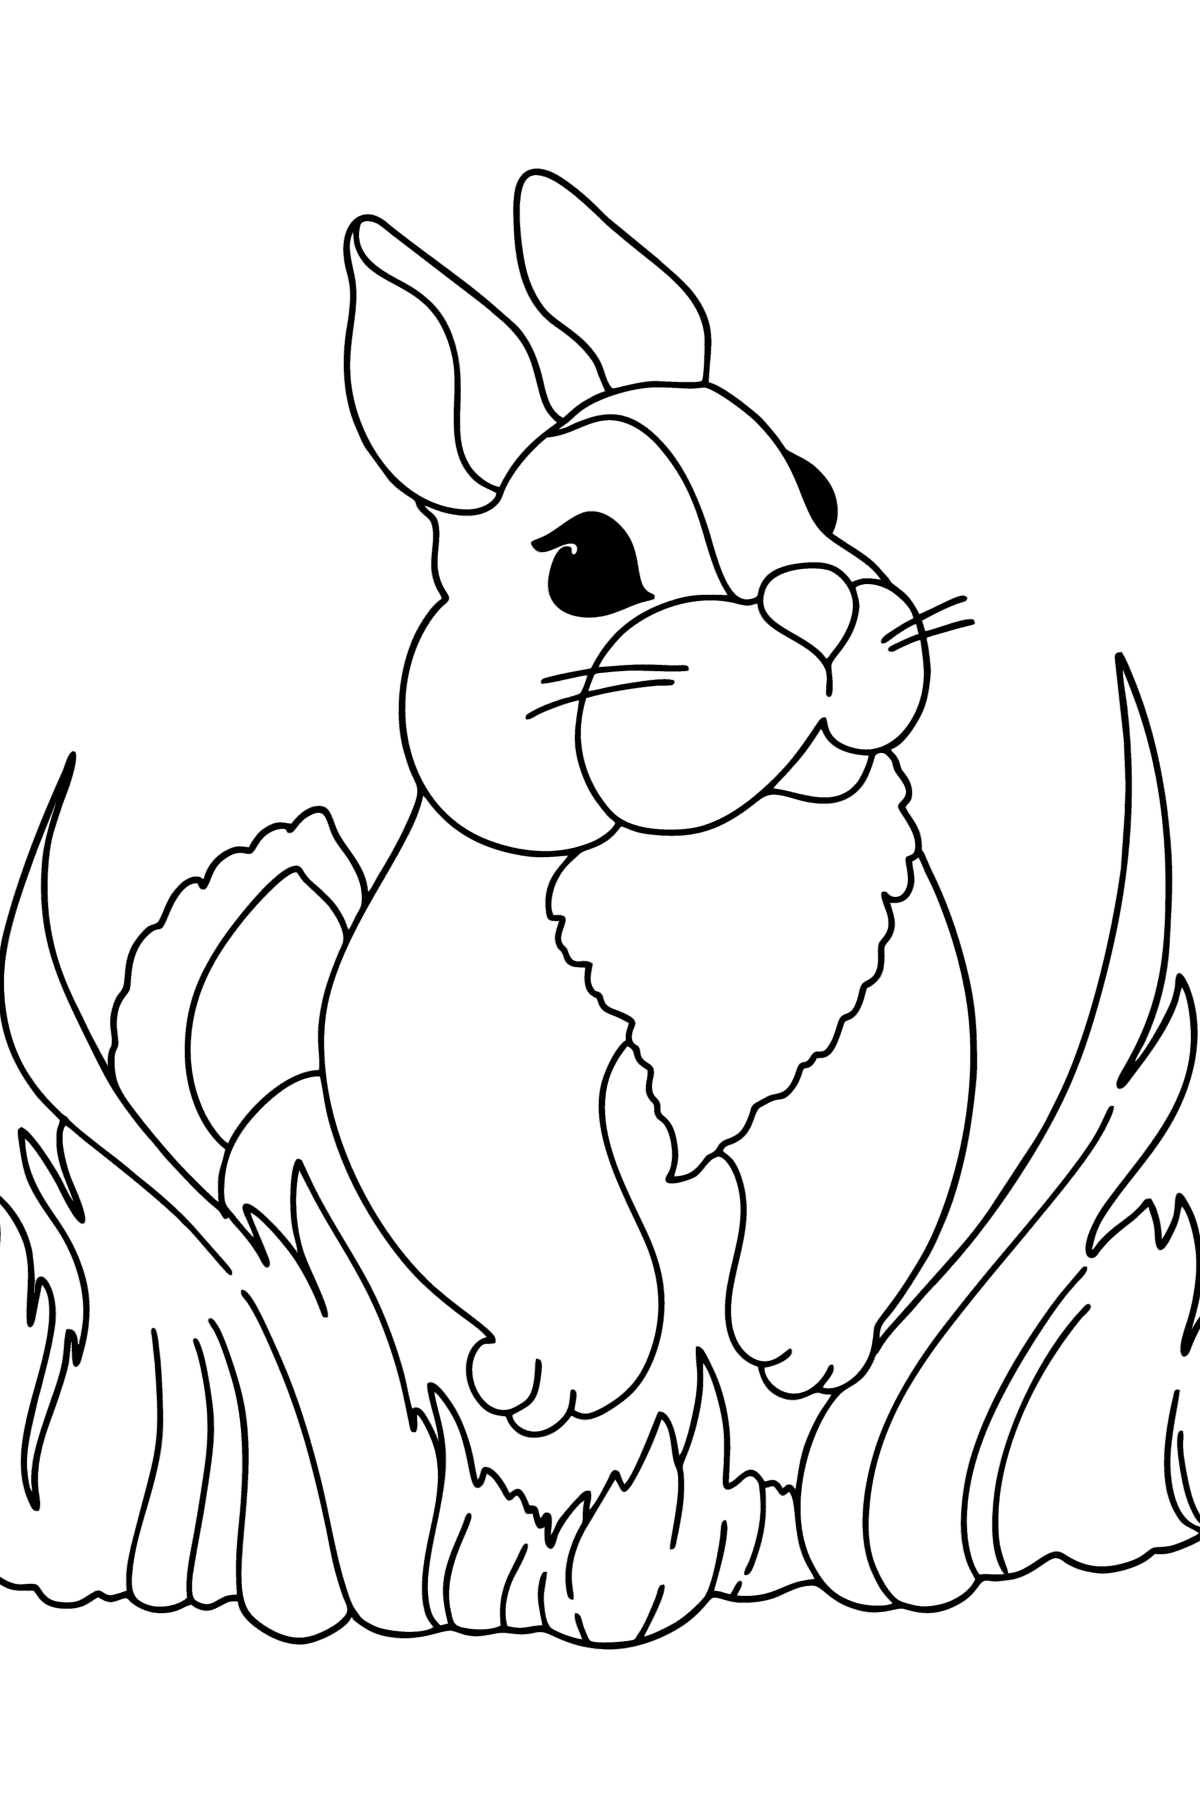 Boyama sayfası kabarık tavşan - Boyamalar çocuklar için